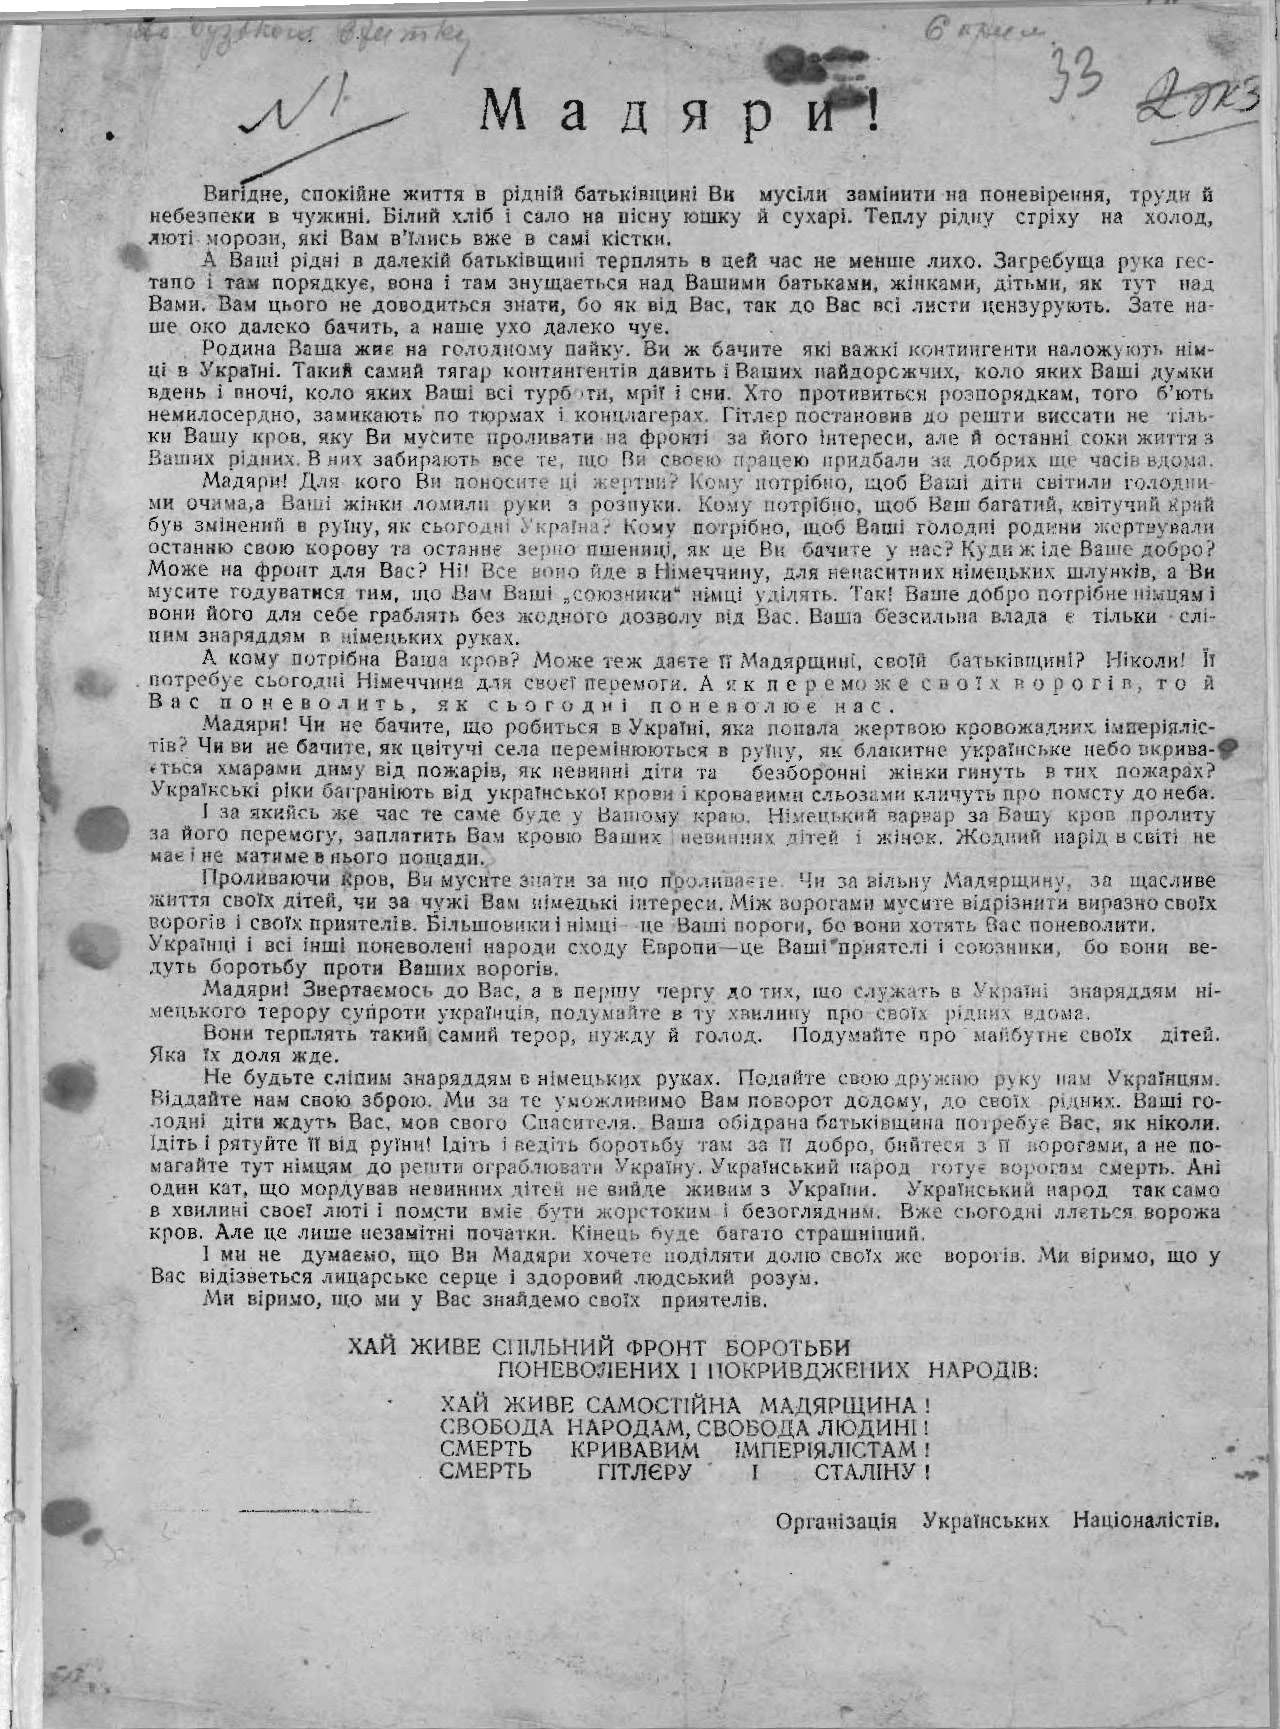 Nat297 M1 Longread3 37 Звернення ОУН до угорських військ. Початок 1944 р.